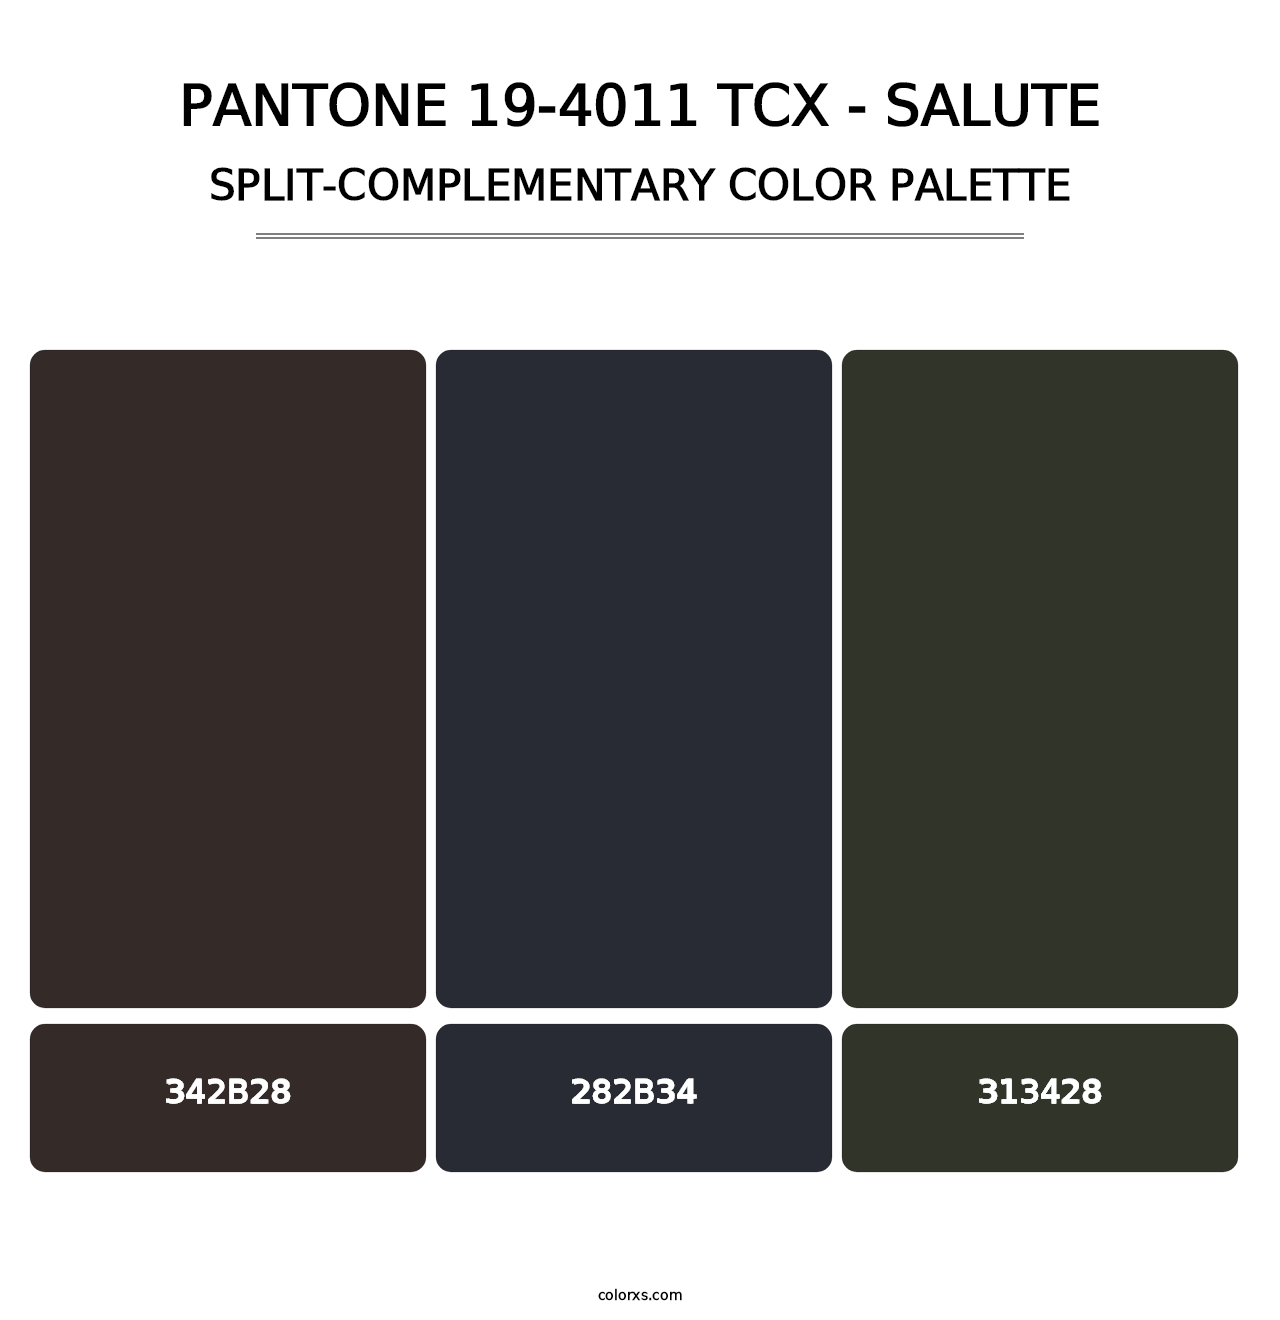 PANTONE 19-4011 TCX - Salute - Split-Complementary Color Palette